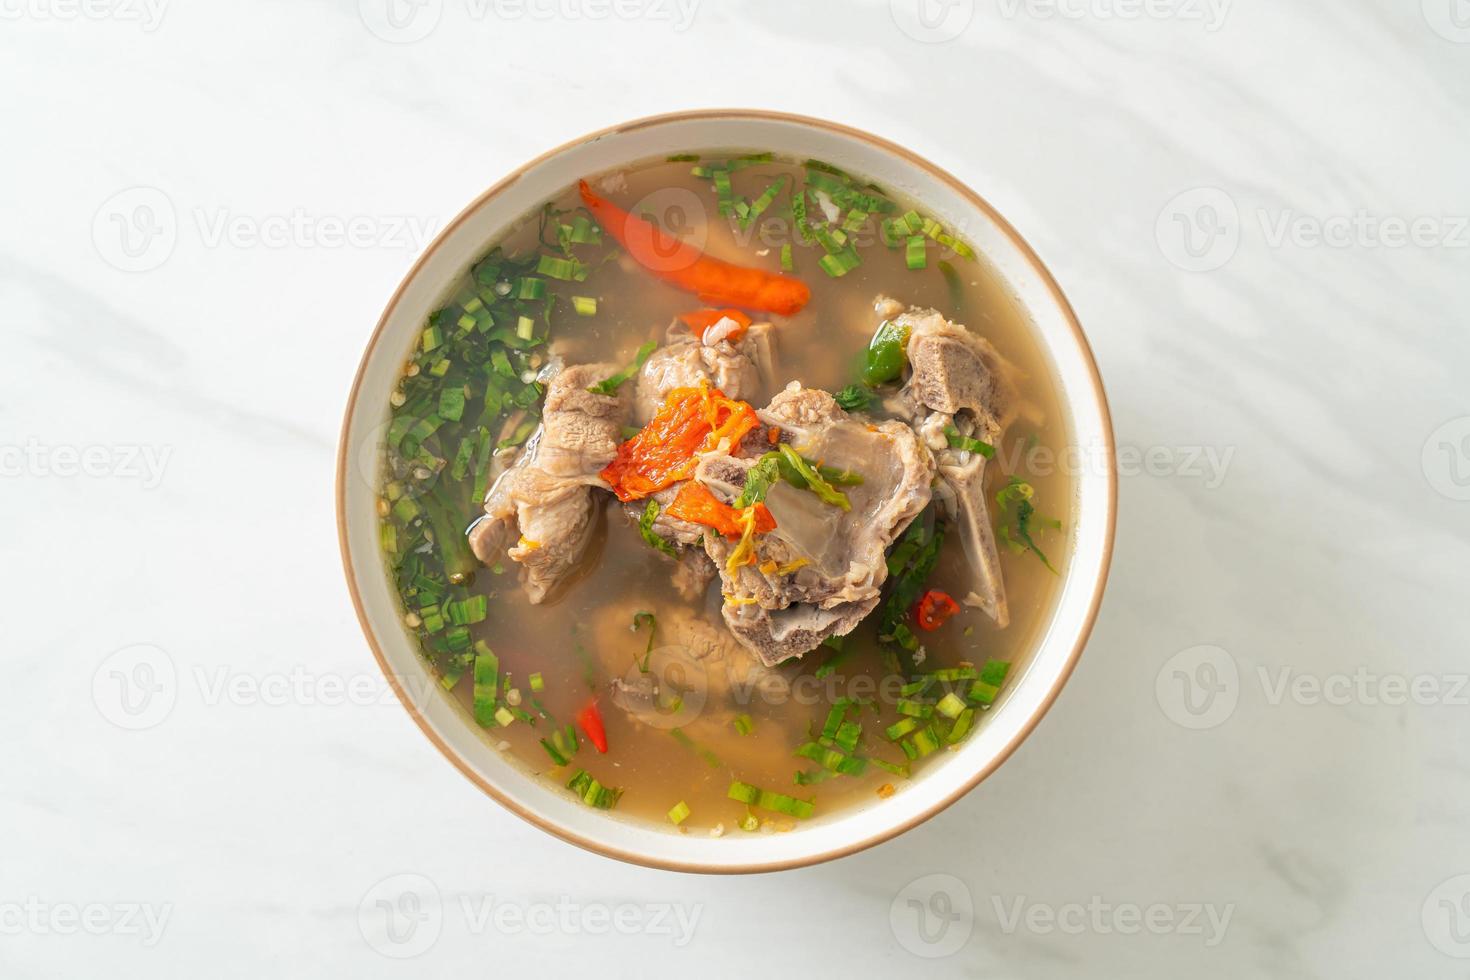 sopa de espinha dorsal de porco picada picante ou sopa leng picante foto